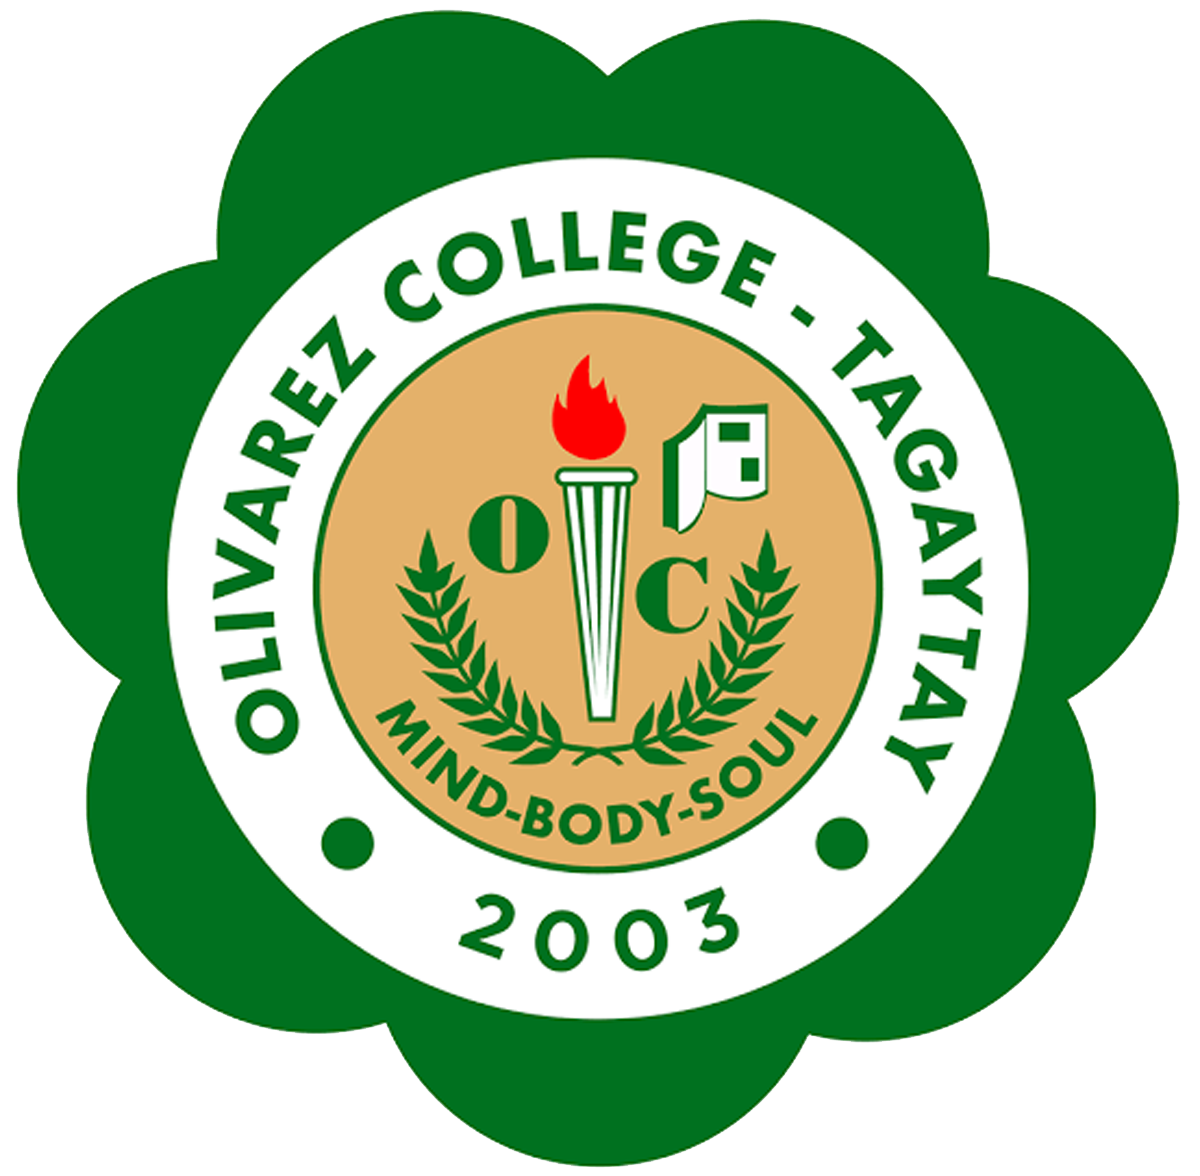 Olivarez College - Tagaytay